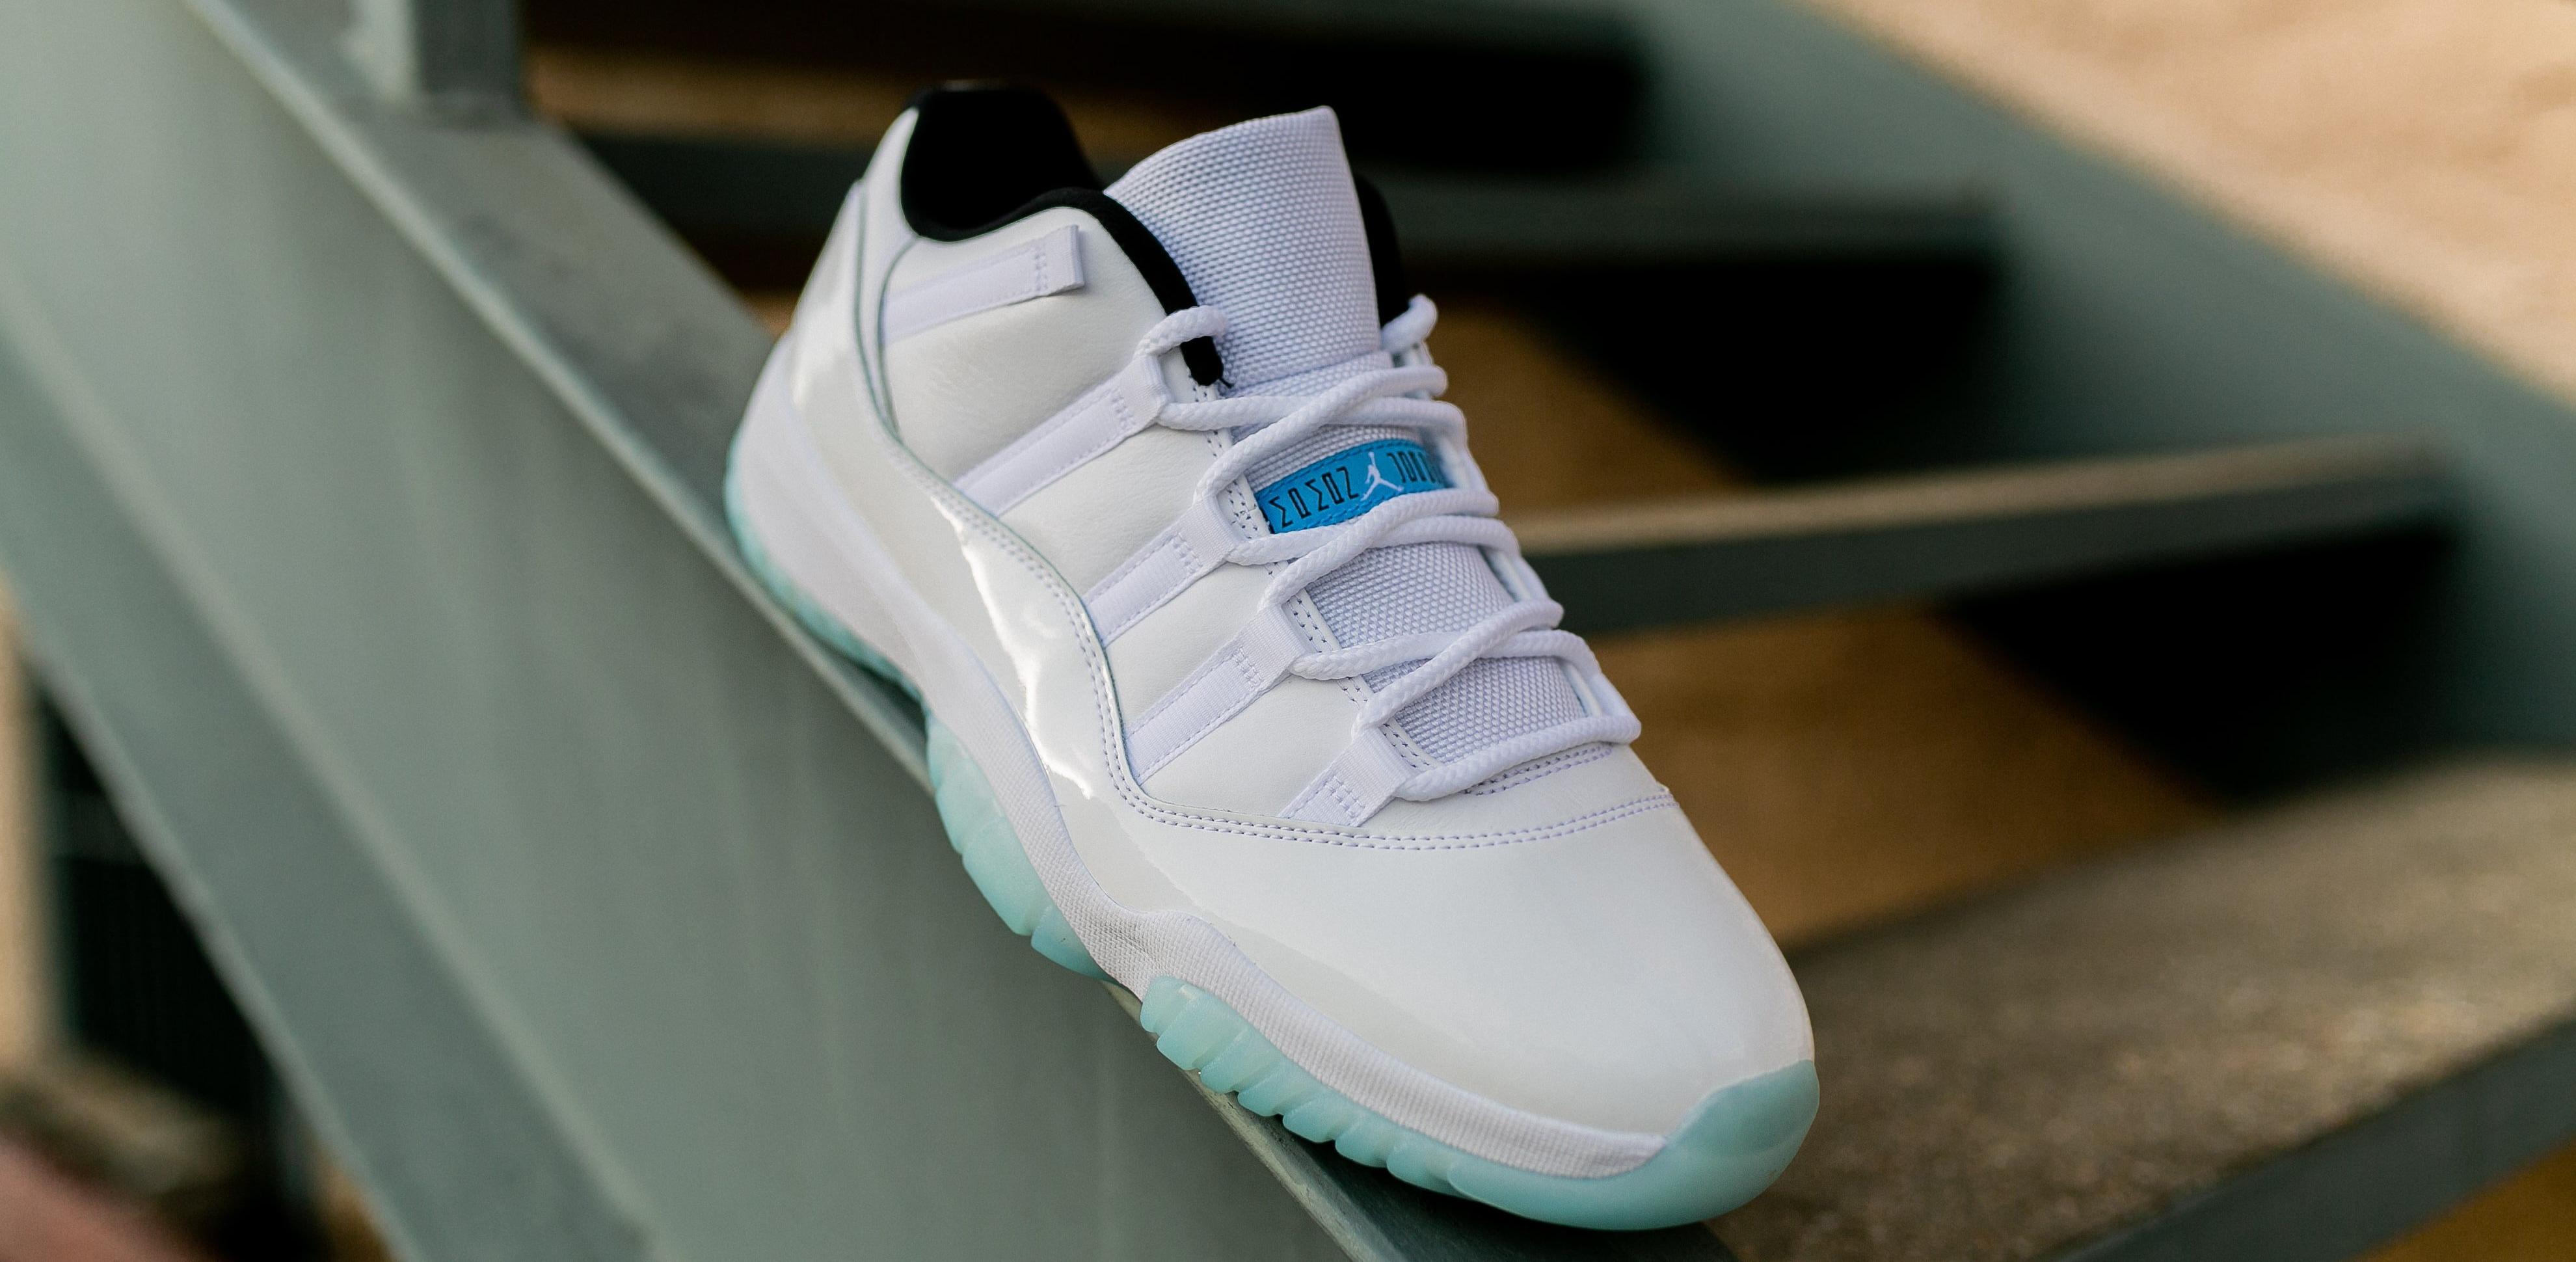 Sneakers Release Jordan 11 Retro Low Legend Blue Launches 5 7